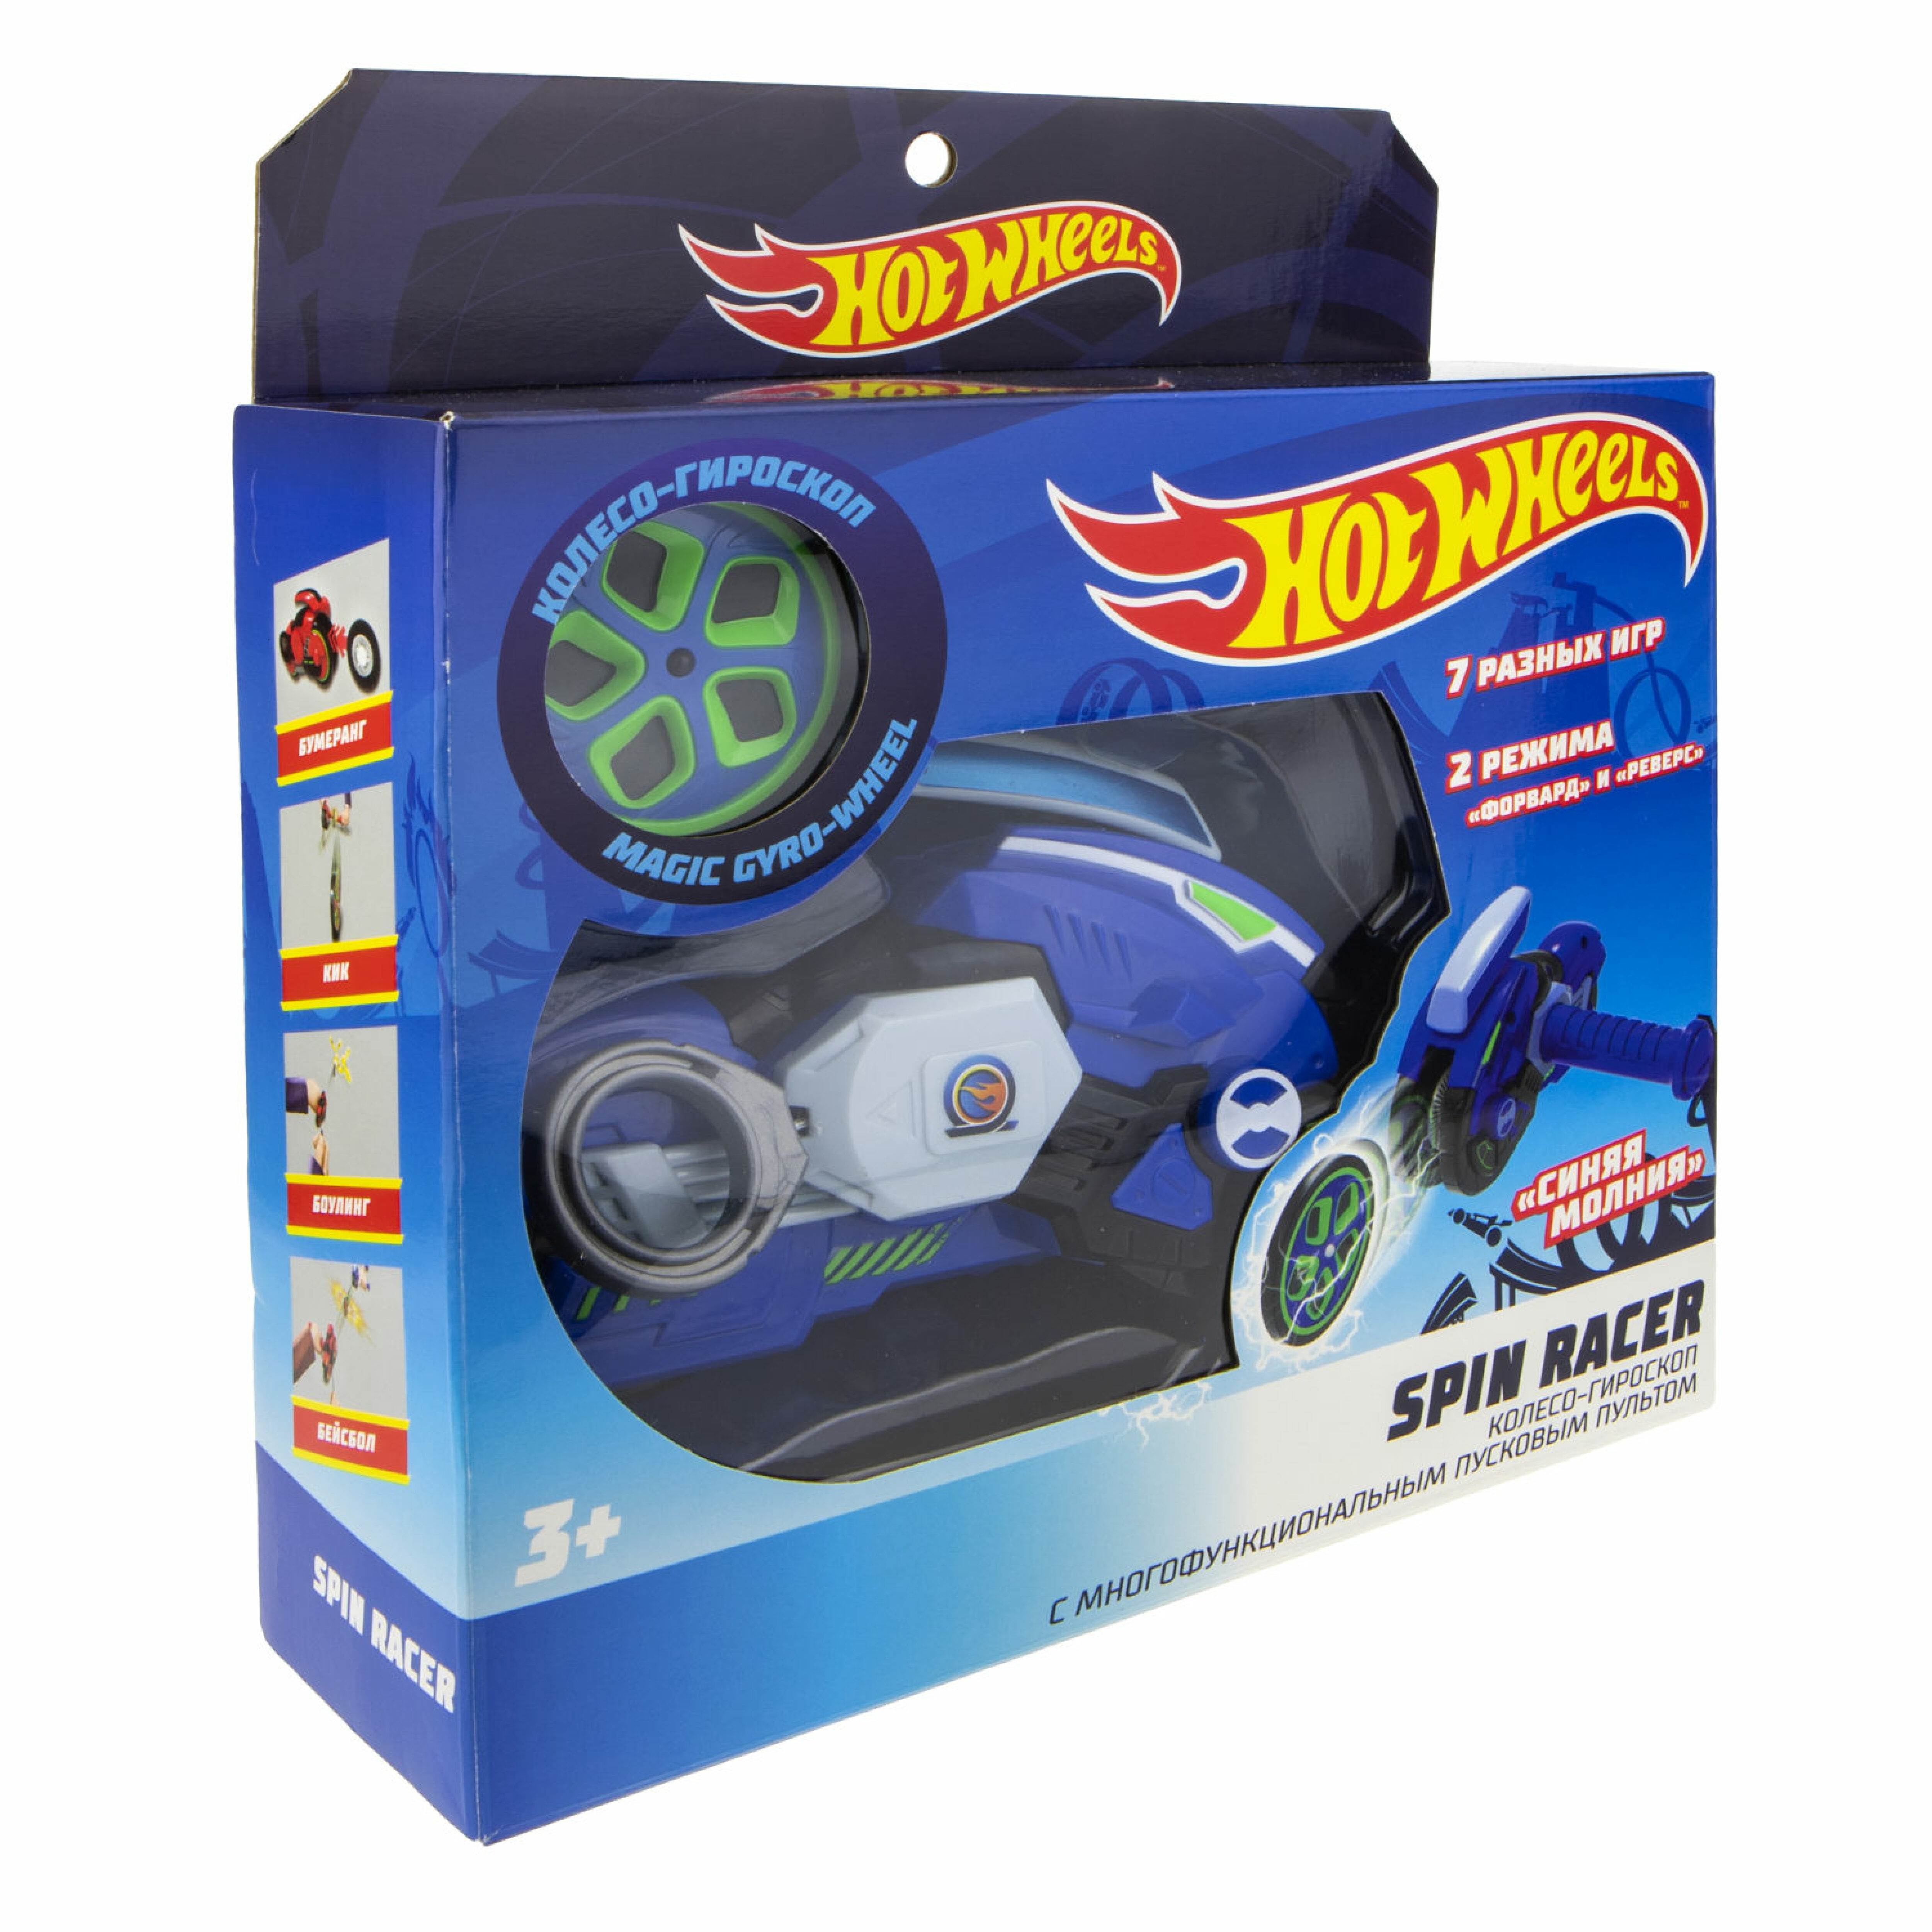 Hot Wheels Spin Racer Синяя Молния Т19373 - фото 2